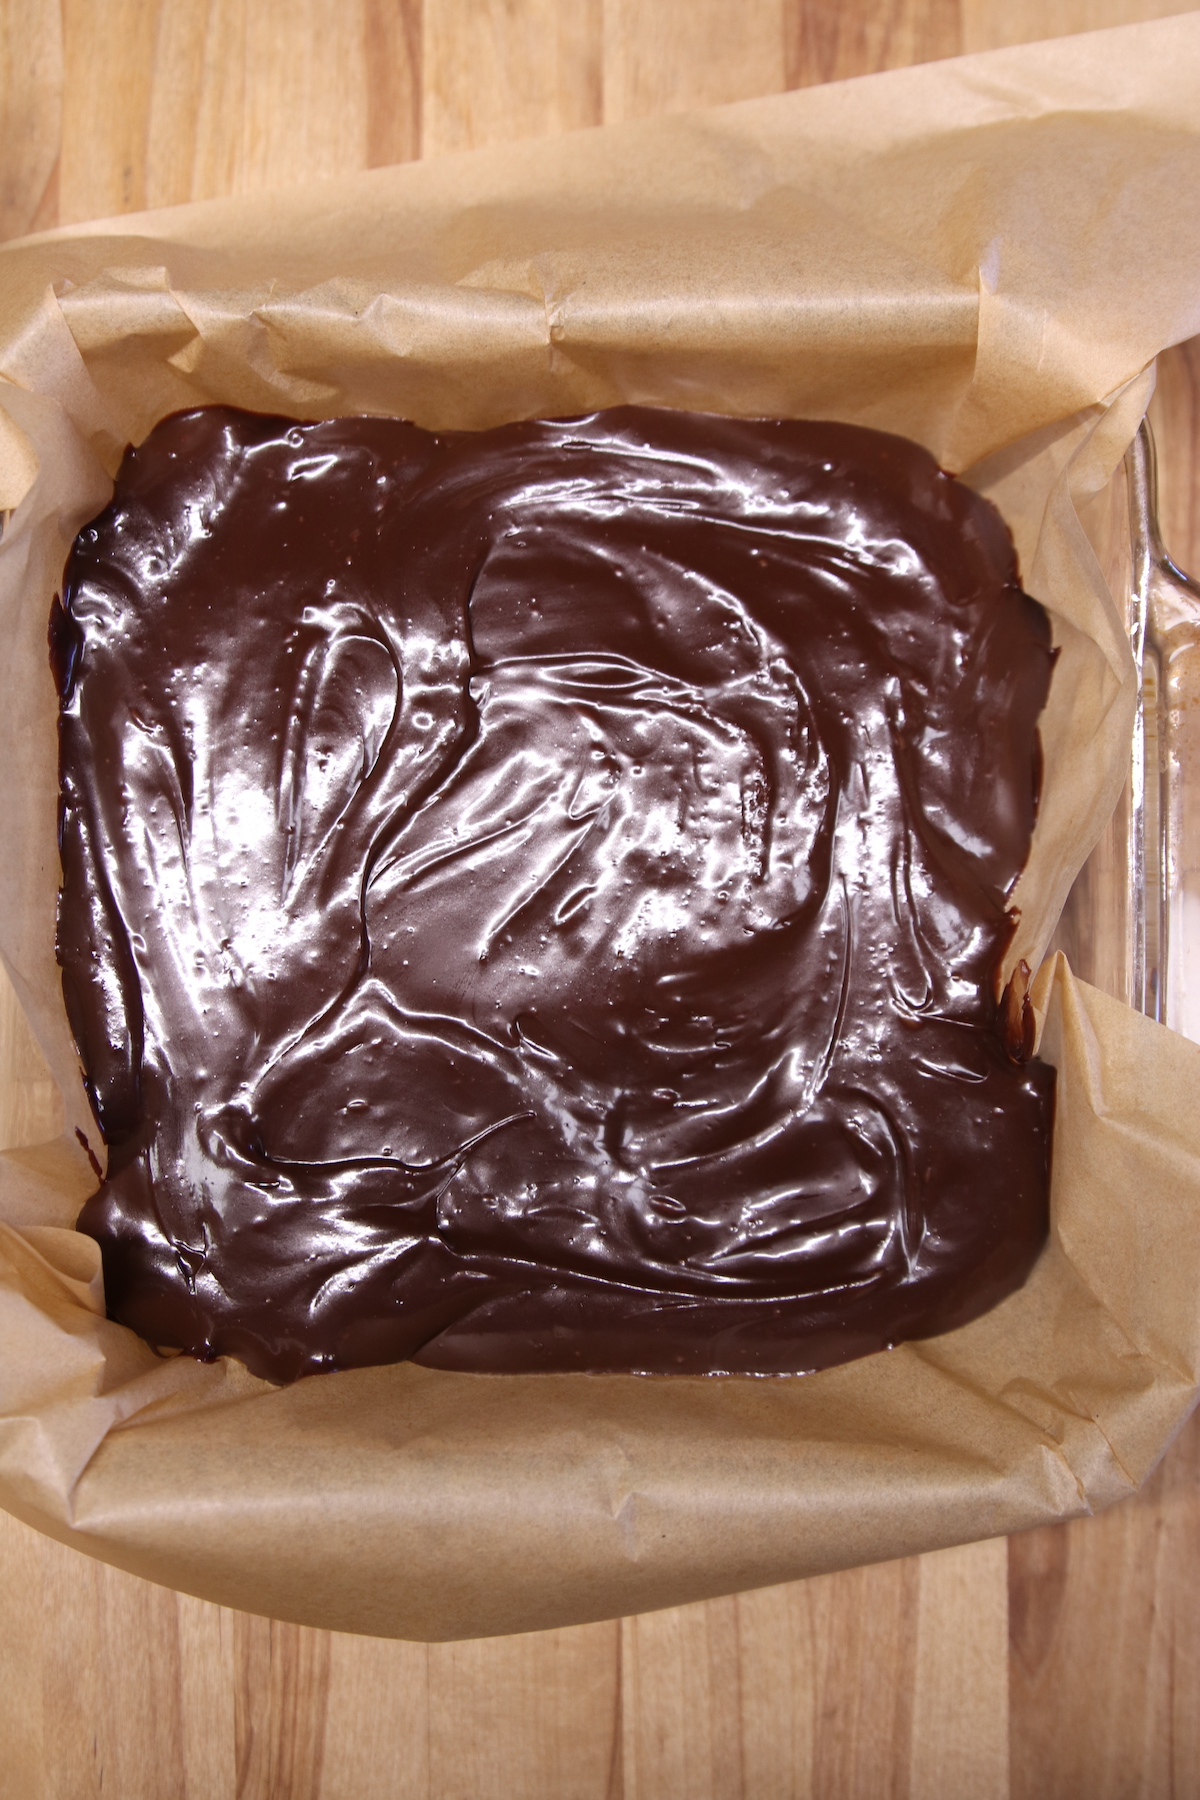 pan of chocolate fudge